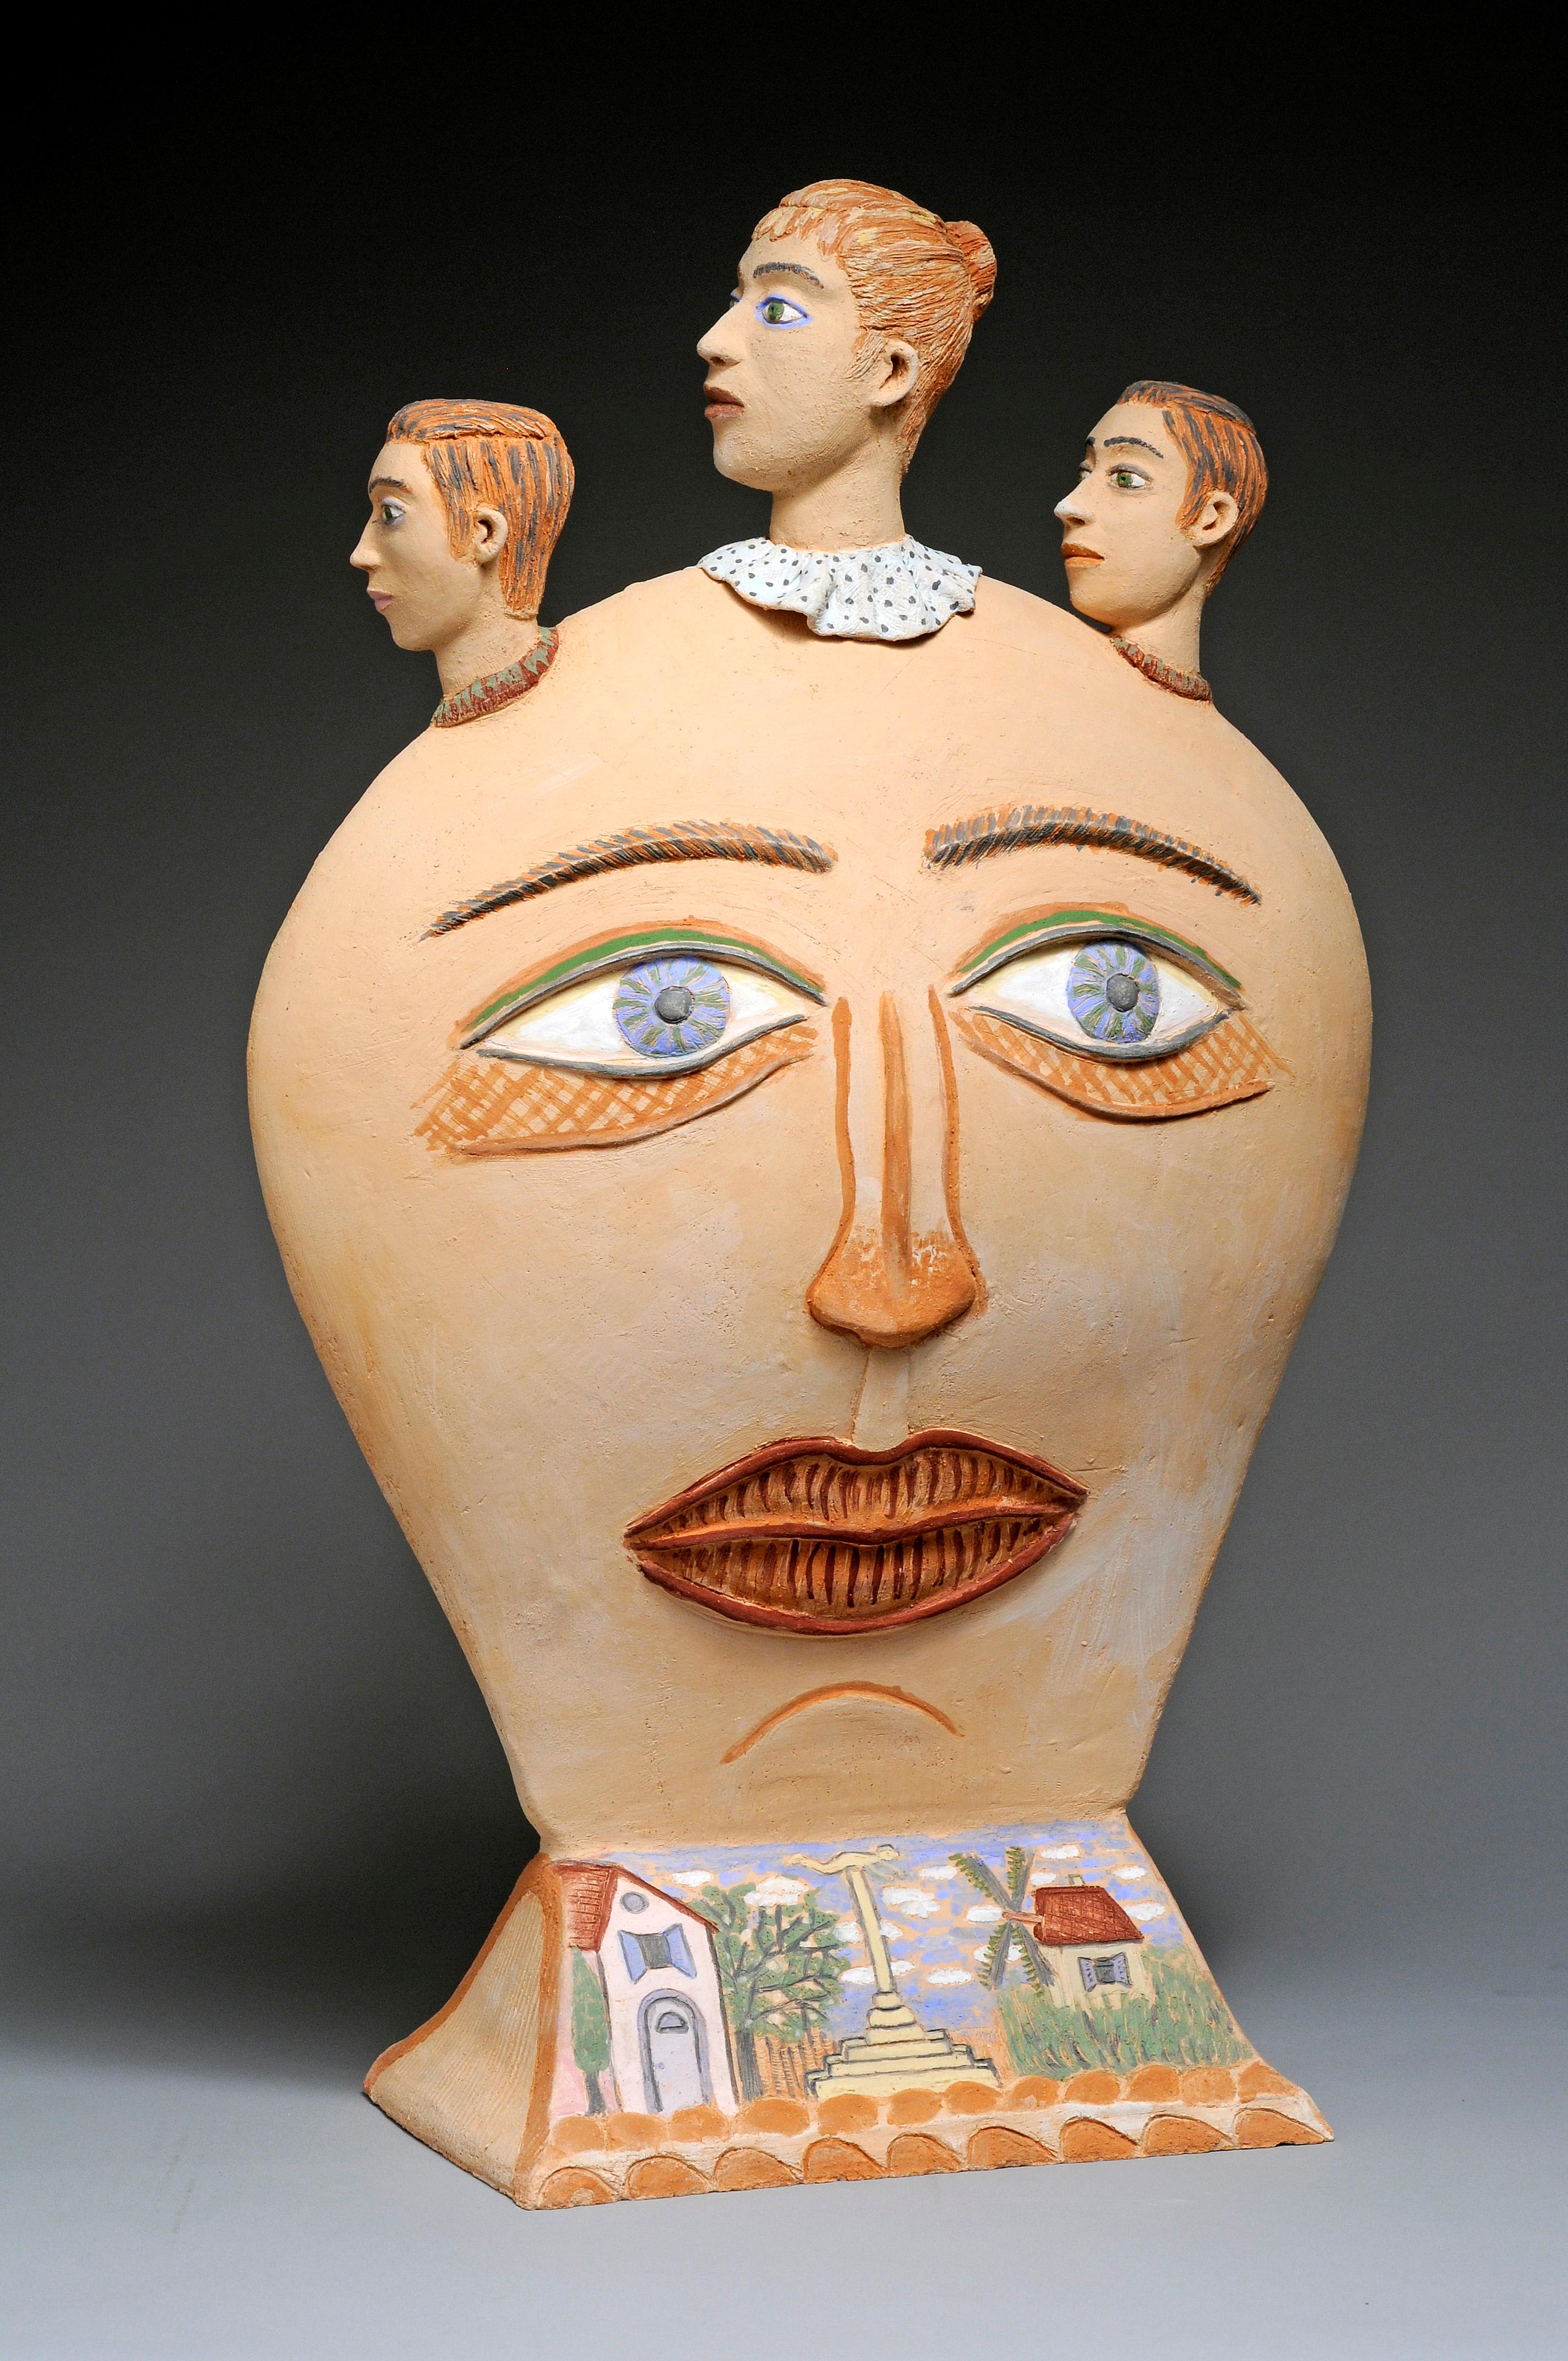 Einzigartige Terrakotta-Skulptur
Vom Künstler handsigniert

Nili PINCAS wurde 1942 in Tel Aviv, Israel, geboren.
Sie studierte am Avni Art Institute in Tel Aviv (Israel) und an der Ecole Nationale Supérieure des Beaux-Arts in Paris.
Von 1960 bis